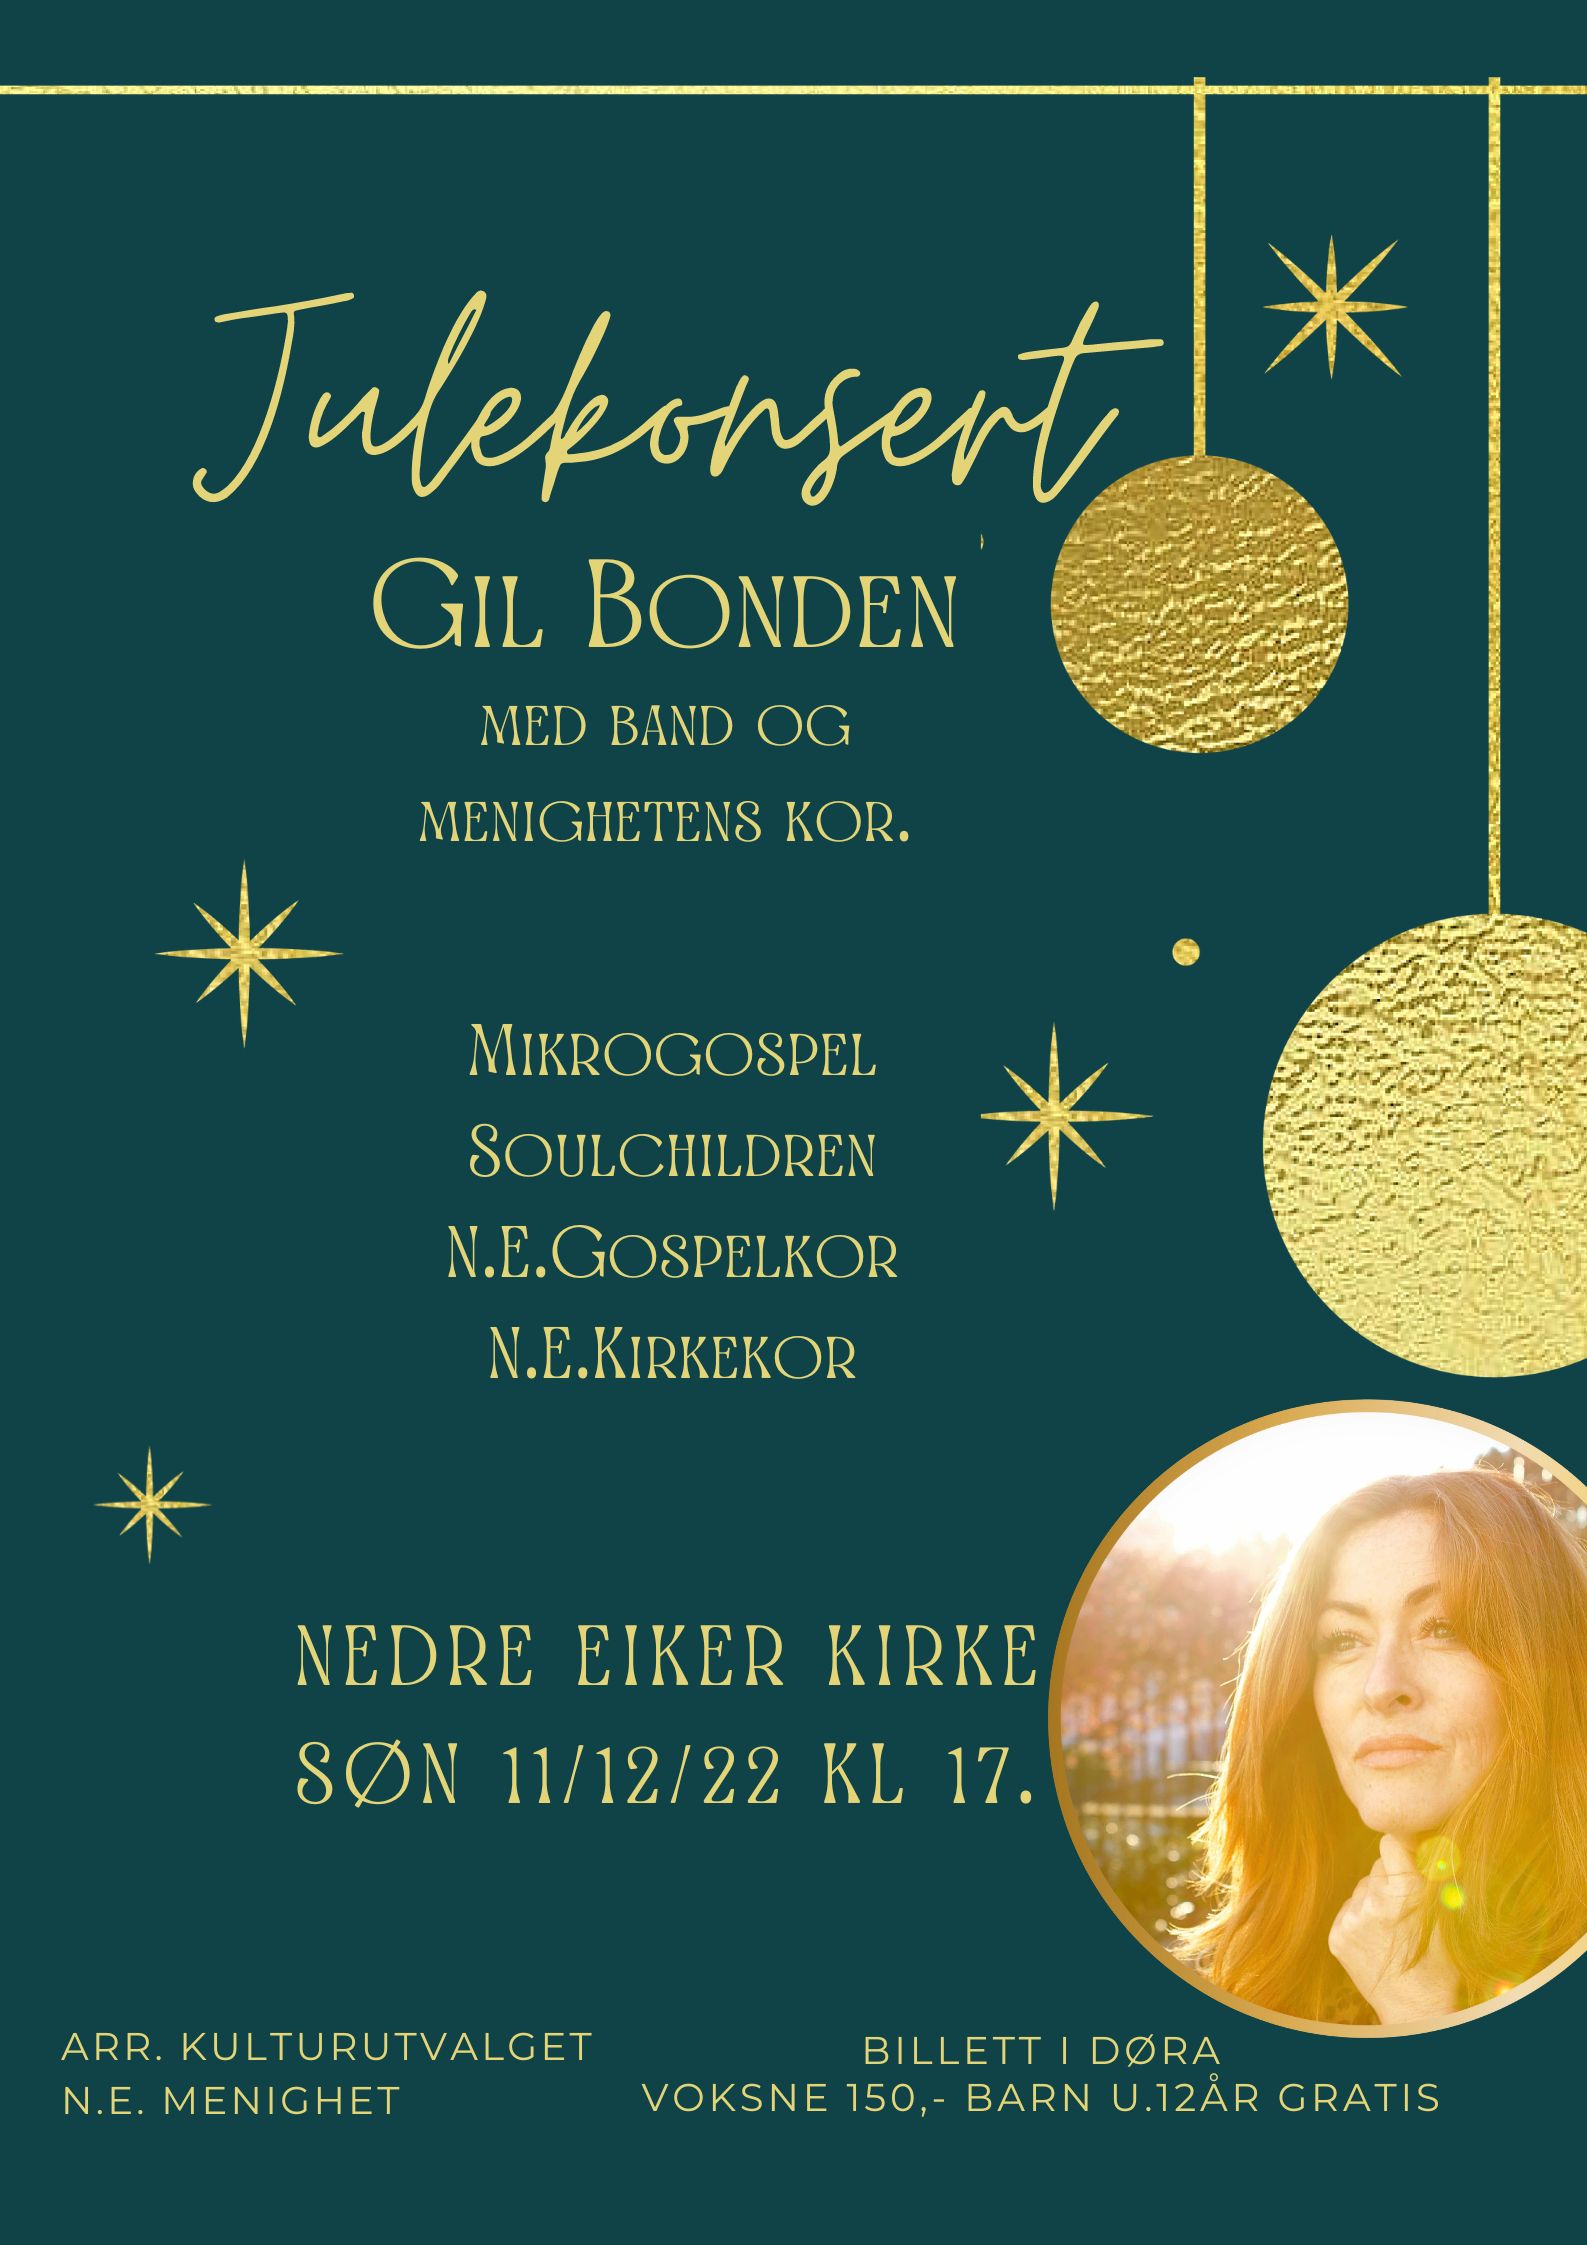 Julekonsert Gil Bonden,band og menighetens kor. NB! konsertstart kl 17.